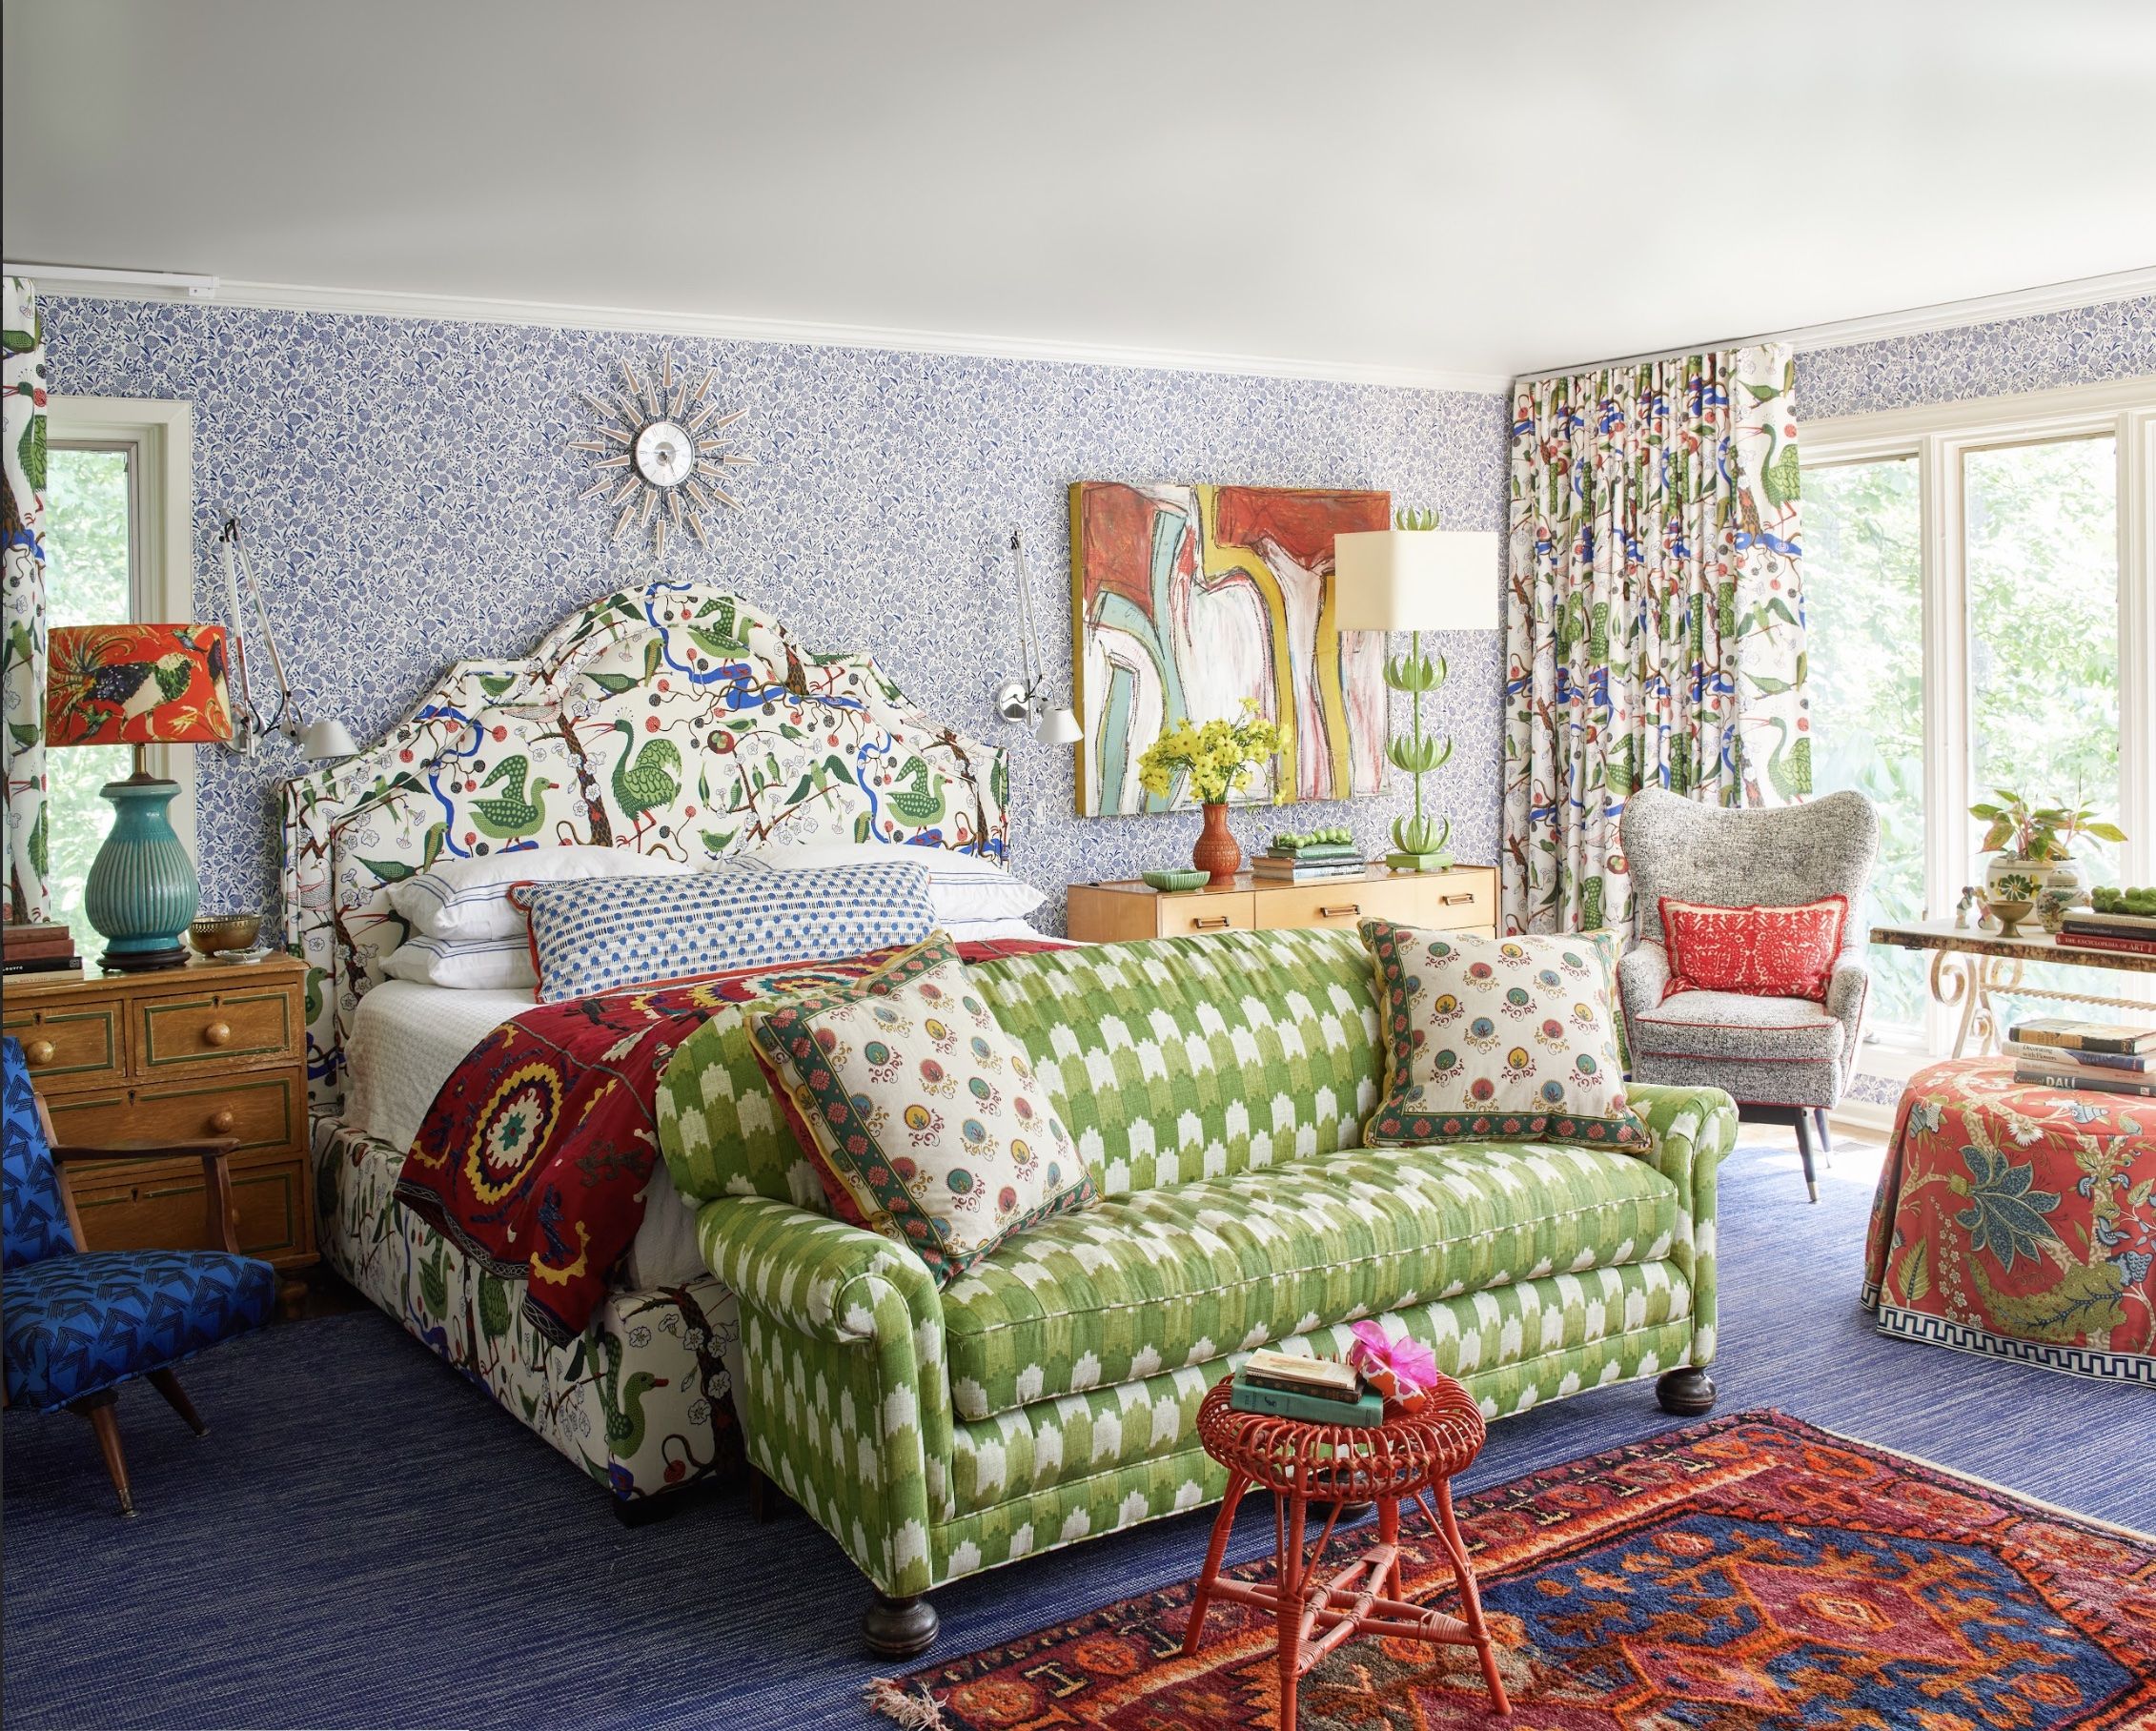 在這個極緻主義的臥室中，色彩和圖案的層次感獨具一格。透過巧妙地將報紙印花與Josef Frank的織物結合，Keenan創造了一個既有視覺衝擊力又不失和諧美感的空間 ©David Tsay